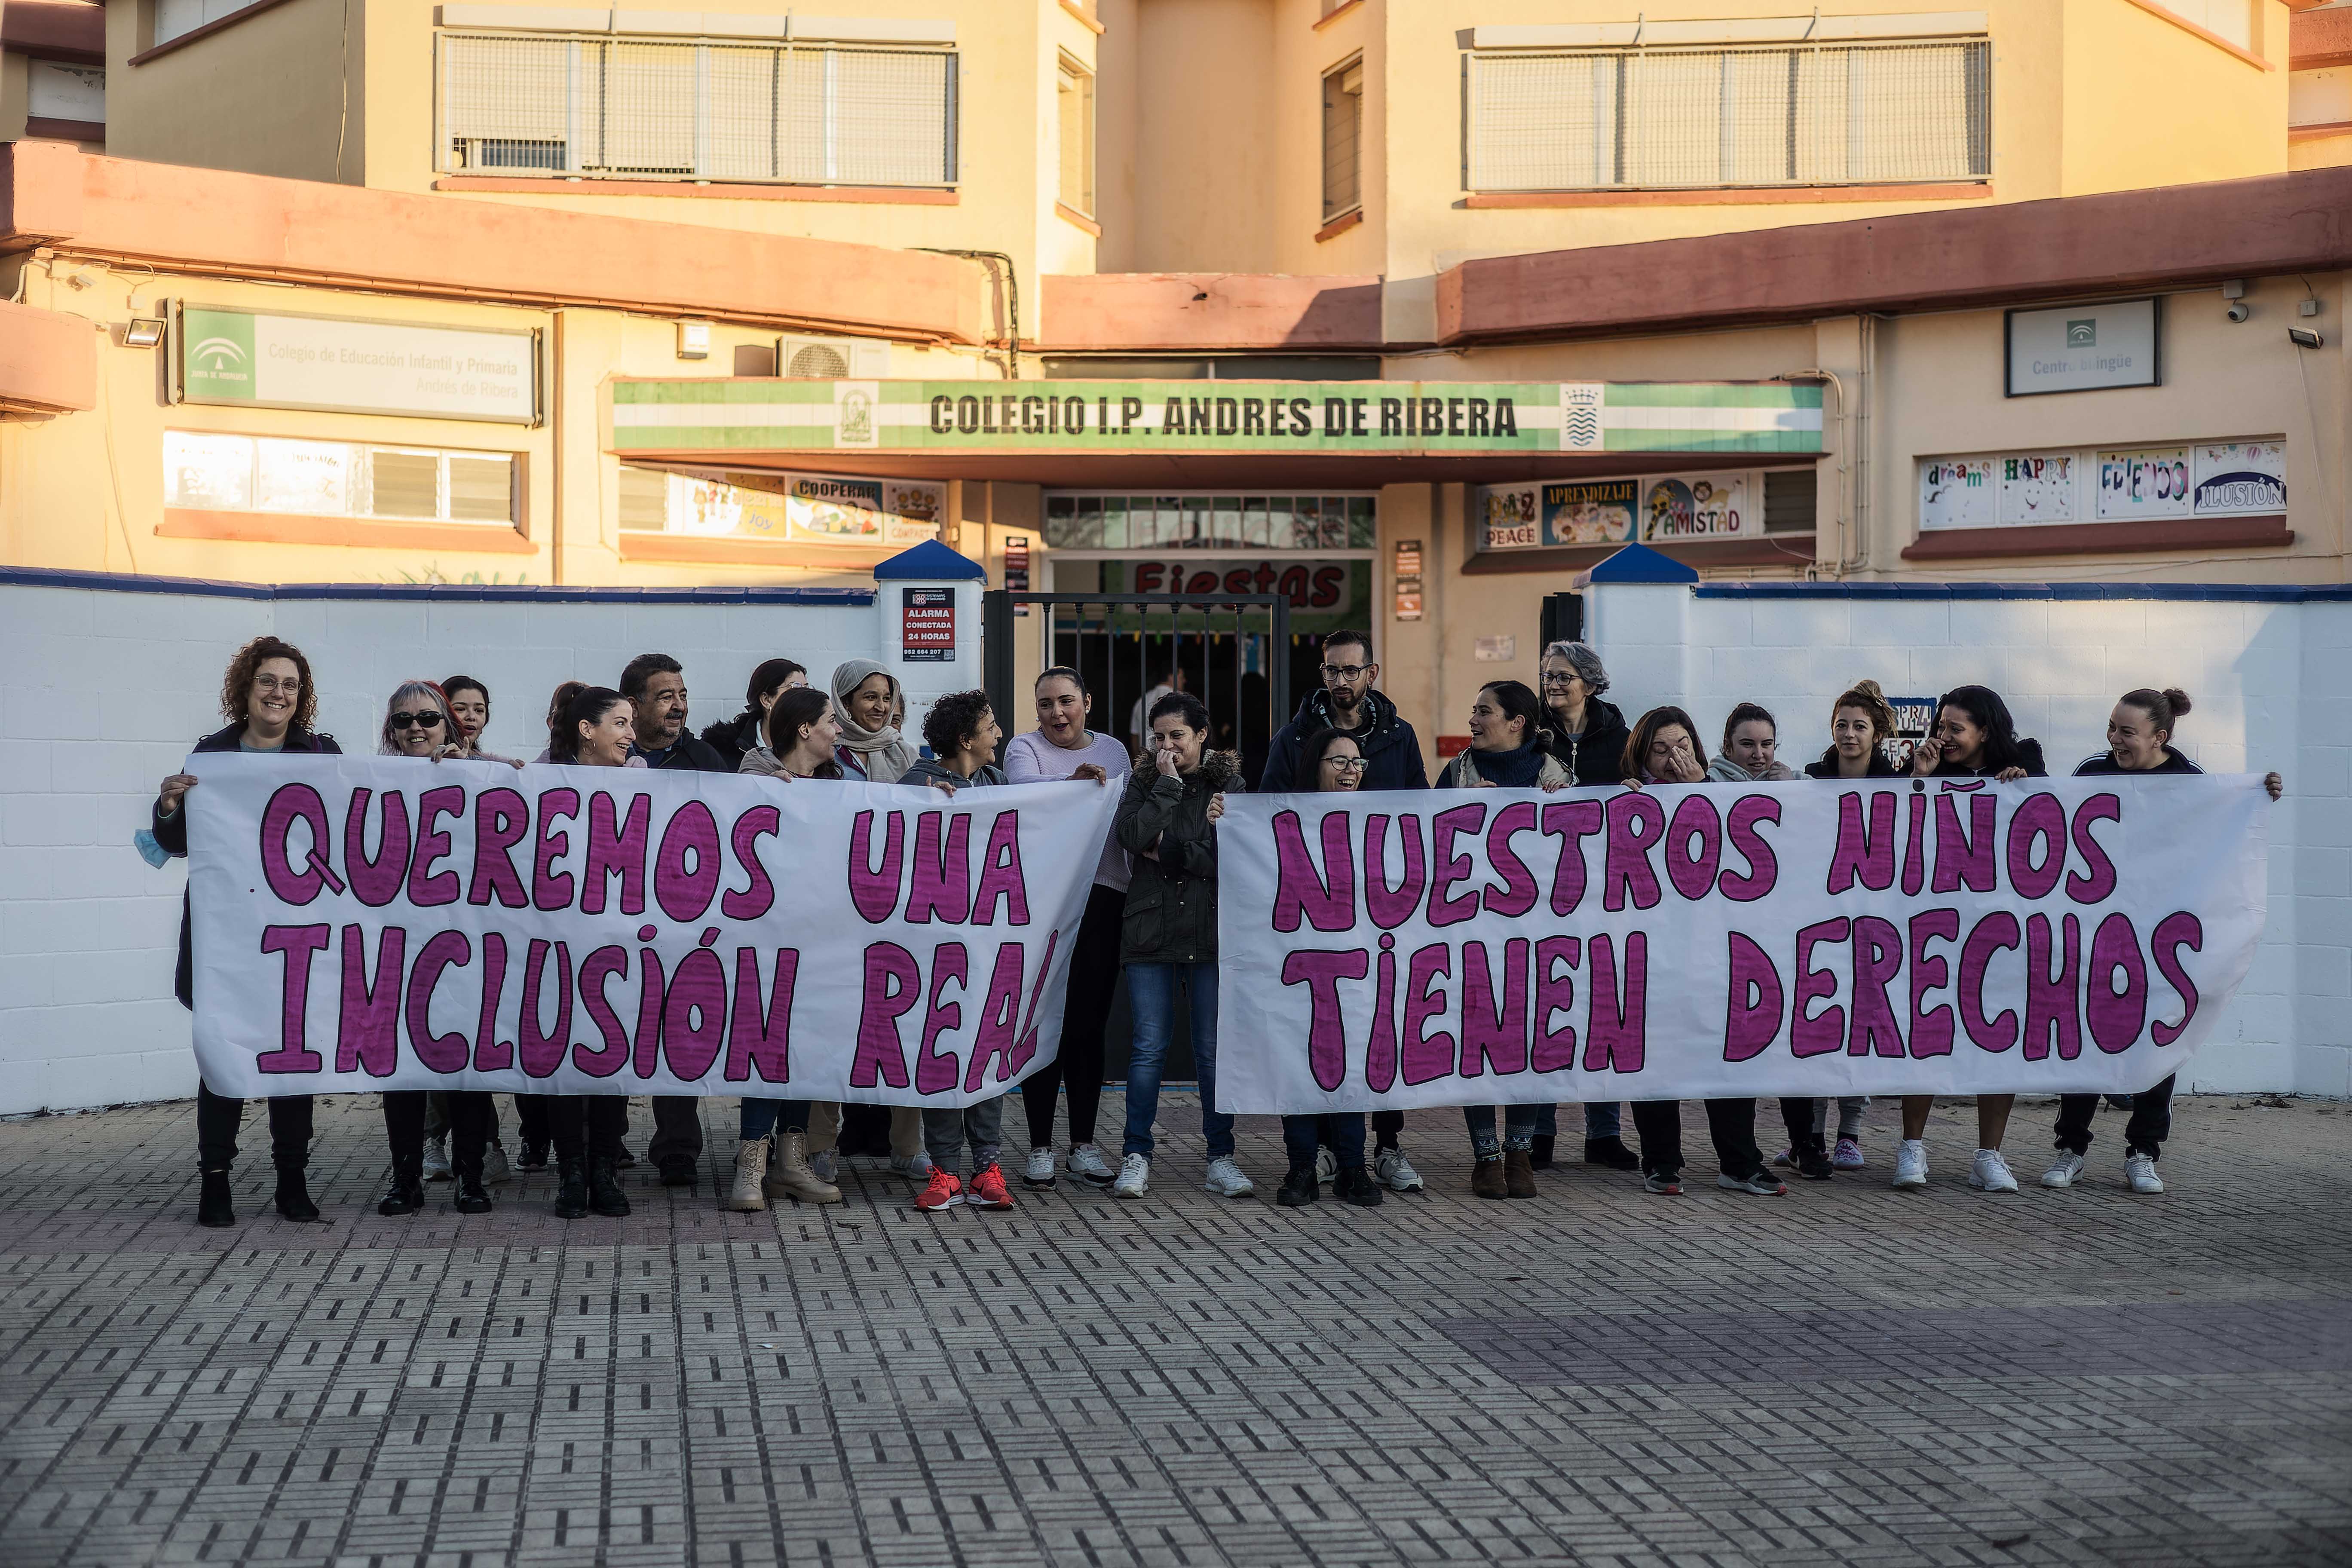 Padres y madres de alumnos con necesidades especiales protestan ante el colegio Andrés de Rivera de Jerez.